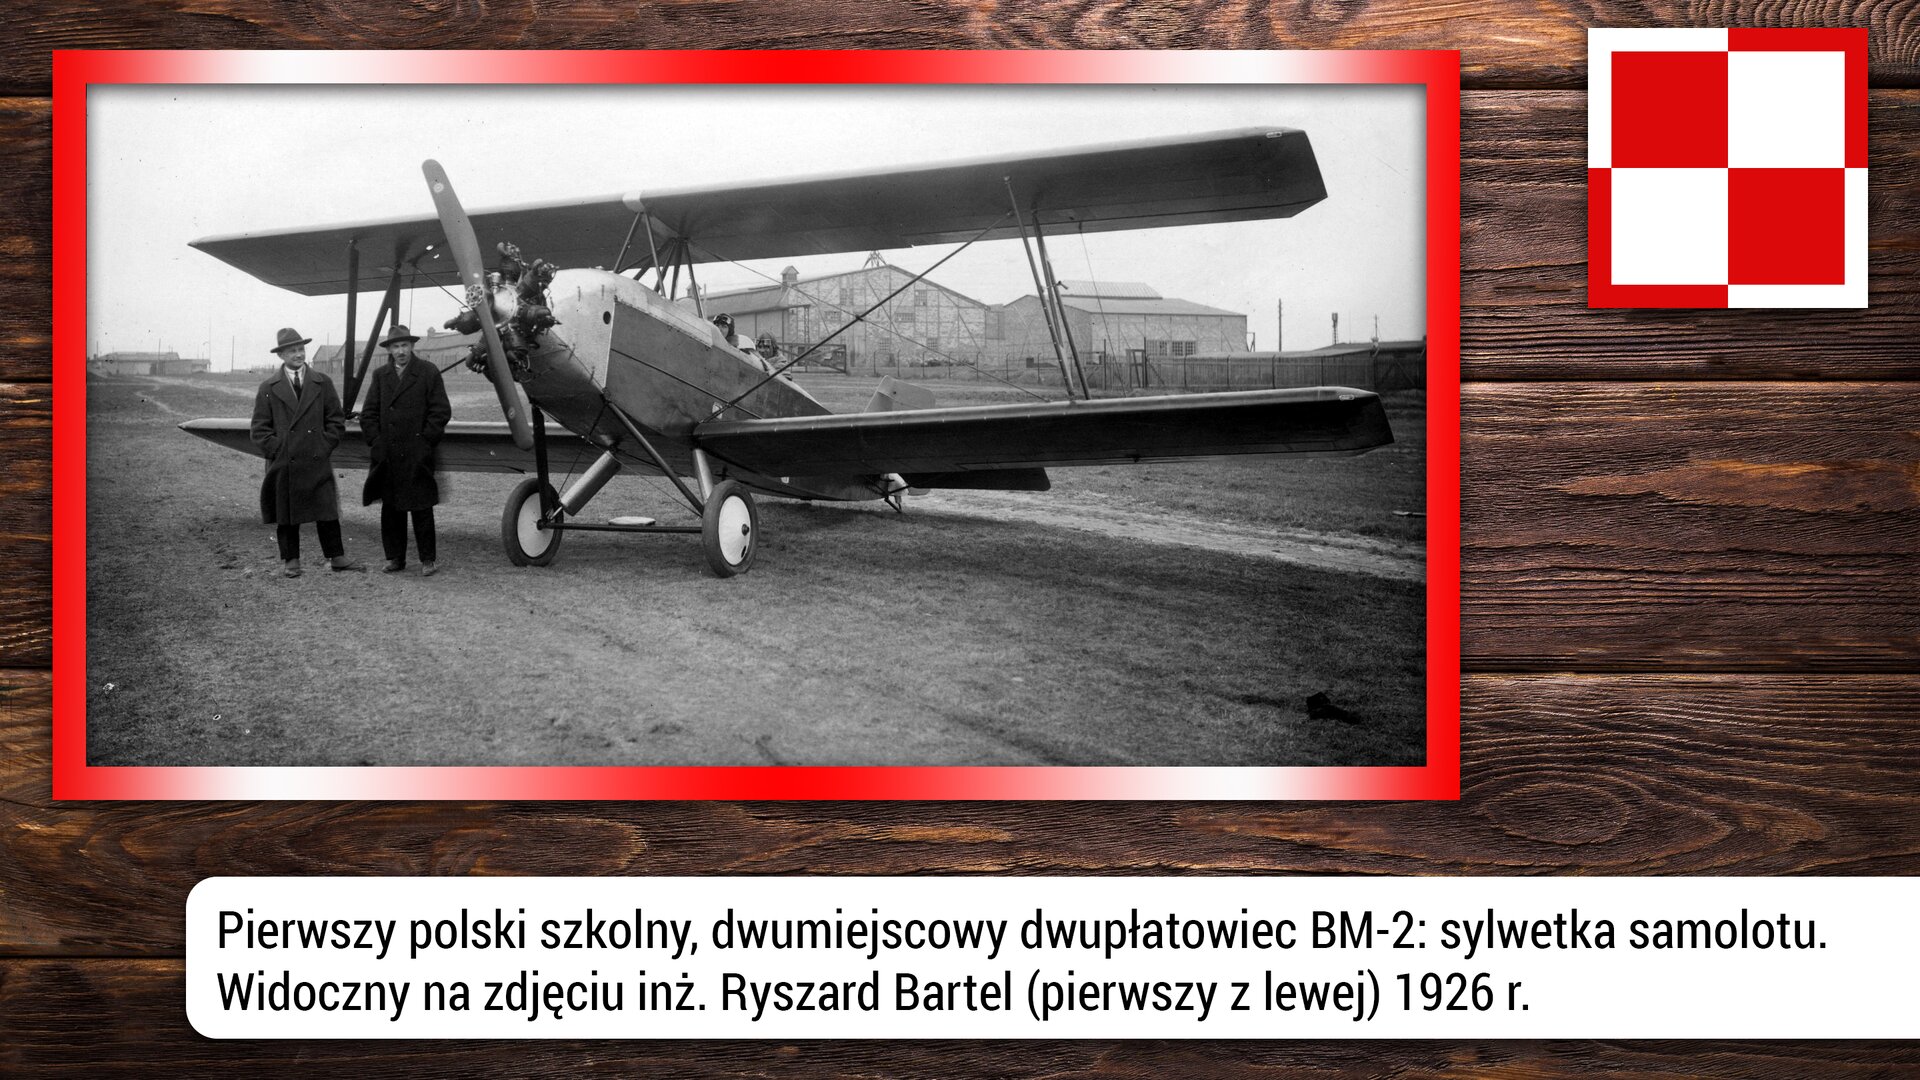 Fotografia przedstawia pierwszy polski, szkolny, dwumiejscowy samolot dwupłatowiec MB-2. Na zdjęciu szczególnie widoczne są dwa płaty, korpus i śmigło. Dwupłatowiec był popularnym typem samolotu na początku dwudziestego wieku. Dwupłatowiec wyróżnia się swoją konstrukcją, ponieważ składa się z dwóch płatów nośnych, czyli dwóch „skrzydeł” umieszczonych jedno pod drugim. Po lewej stronie zdjęcia, przy samolocie stoją dwie postaci. Po lewej stoi Ryszard Bartel – to polski inżynier, konstruktor lotniczy i pilot. Zdjęcie zrobiono w 1926 r.